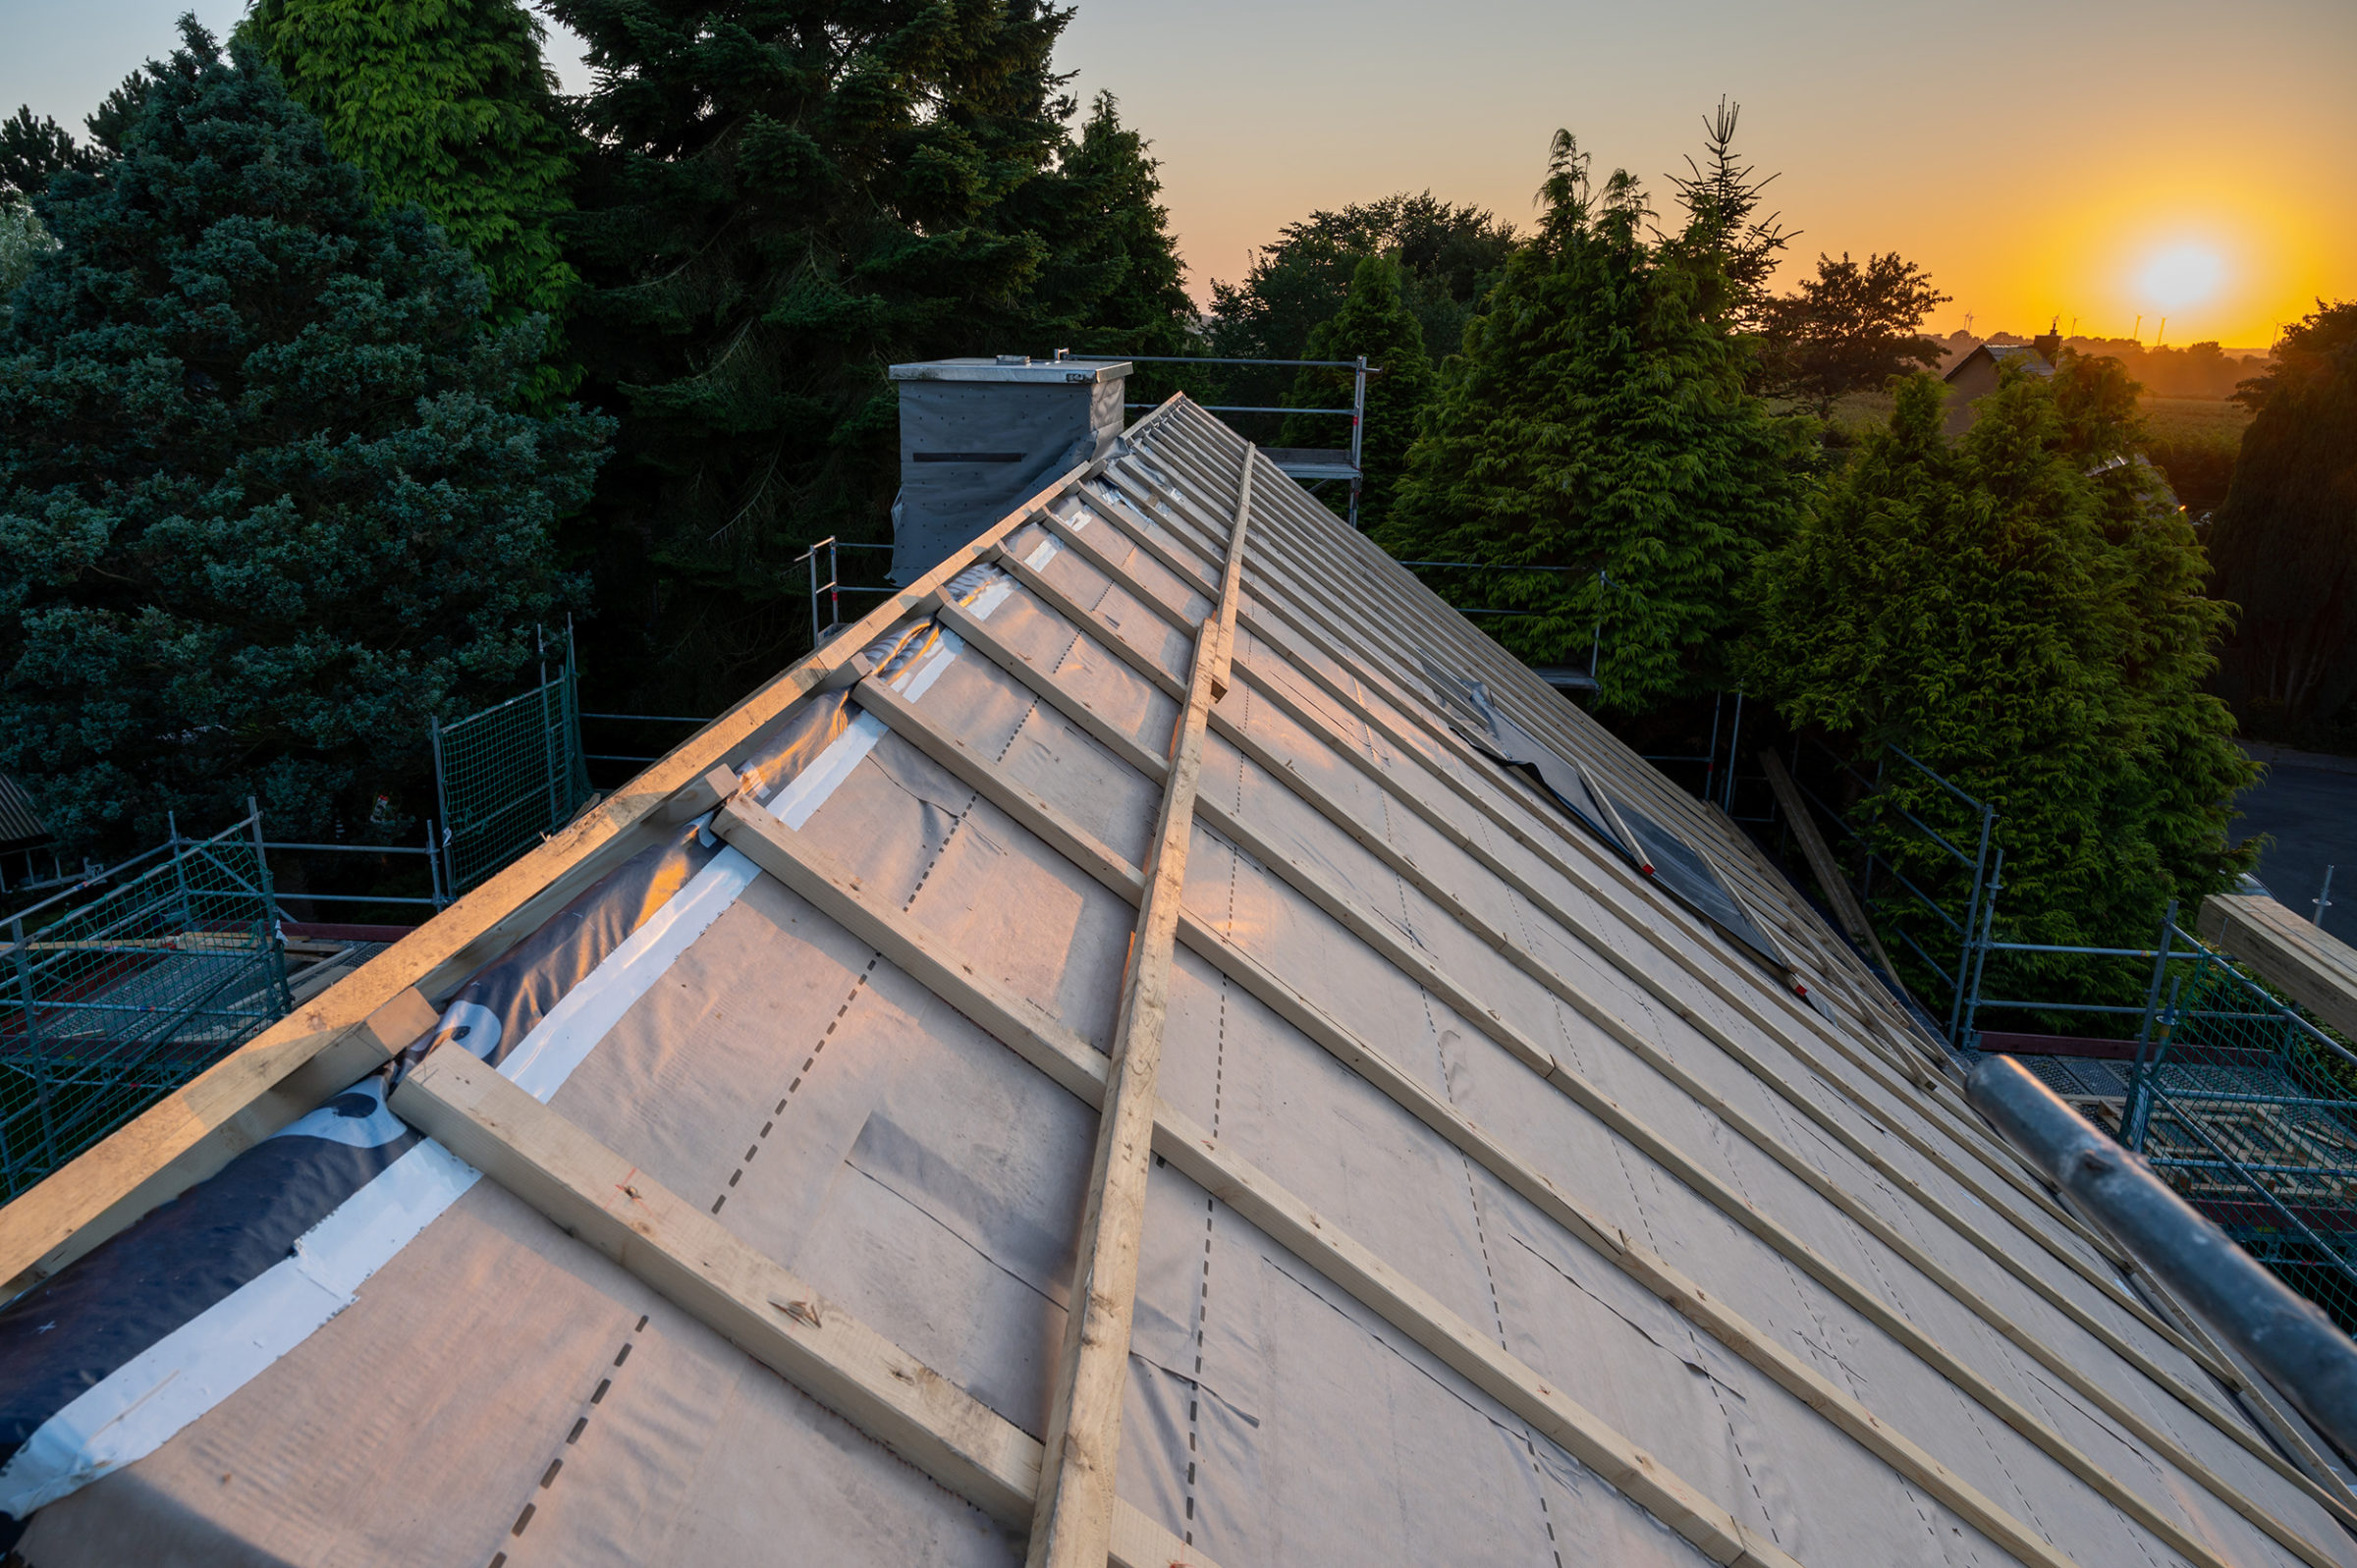 GEG: Ungedecktes Dach mit Holzbalken im Sonnenuntergang. Im Hintergrund sind Baeume.